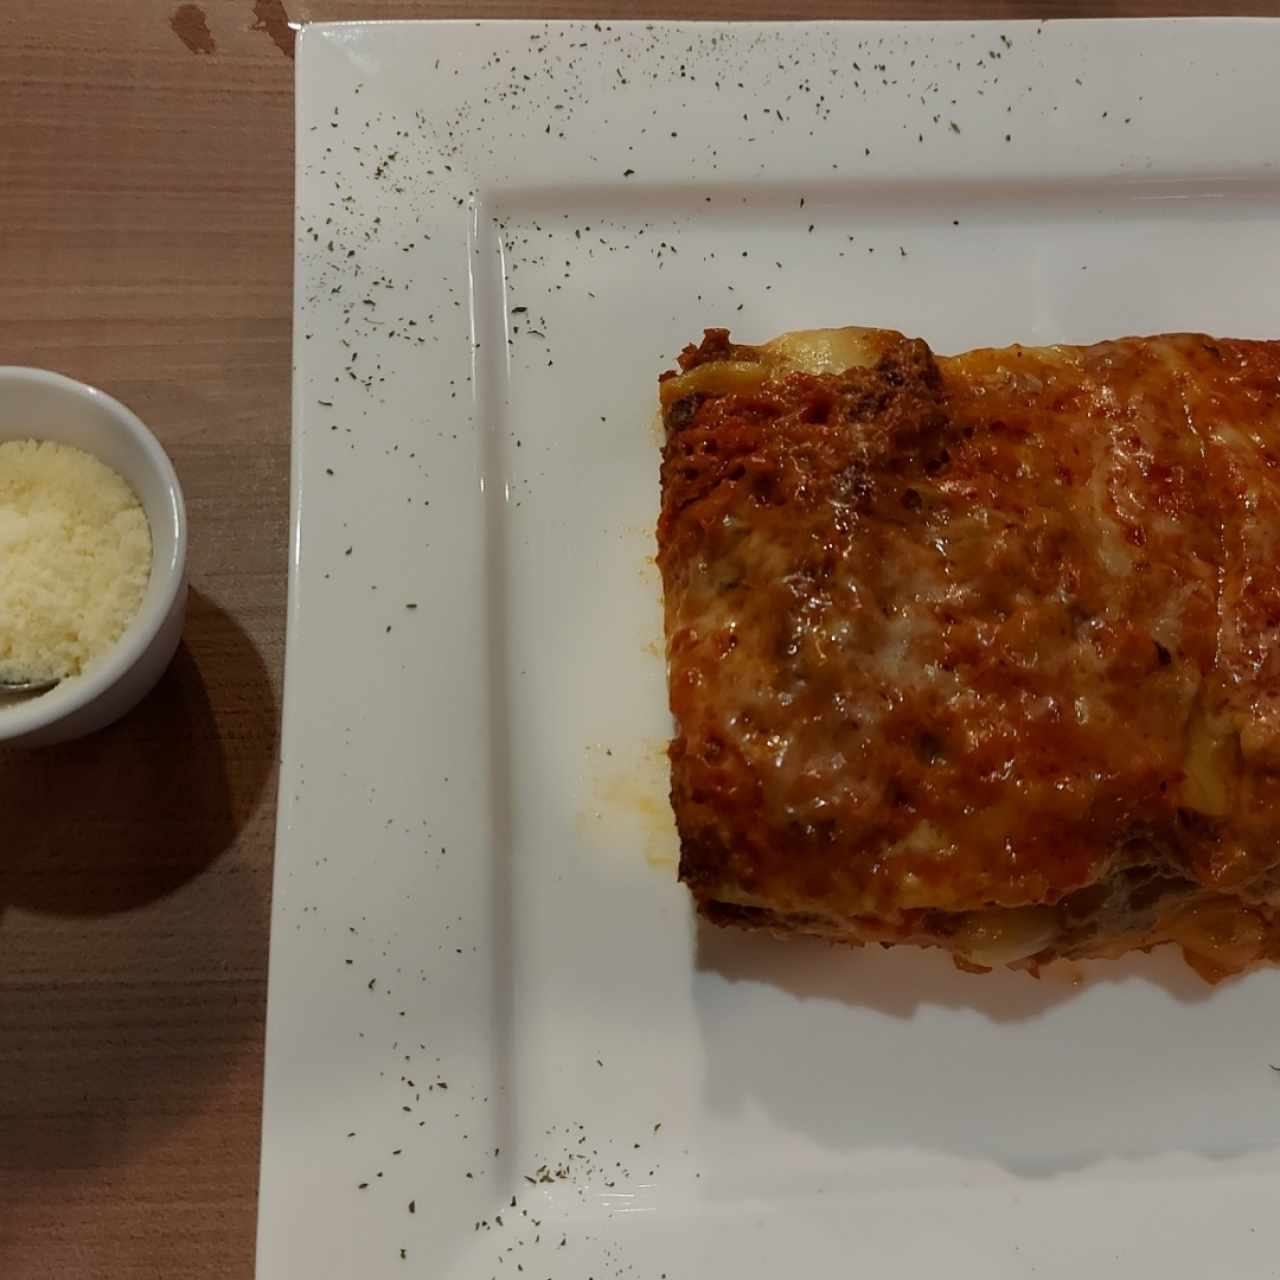 Paste - Lasagna alla Bolognese